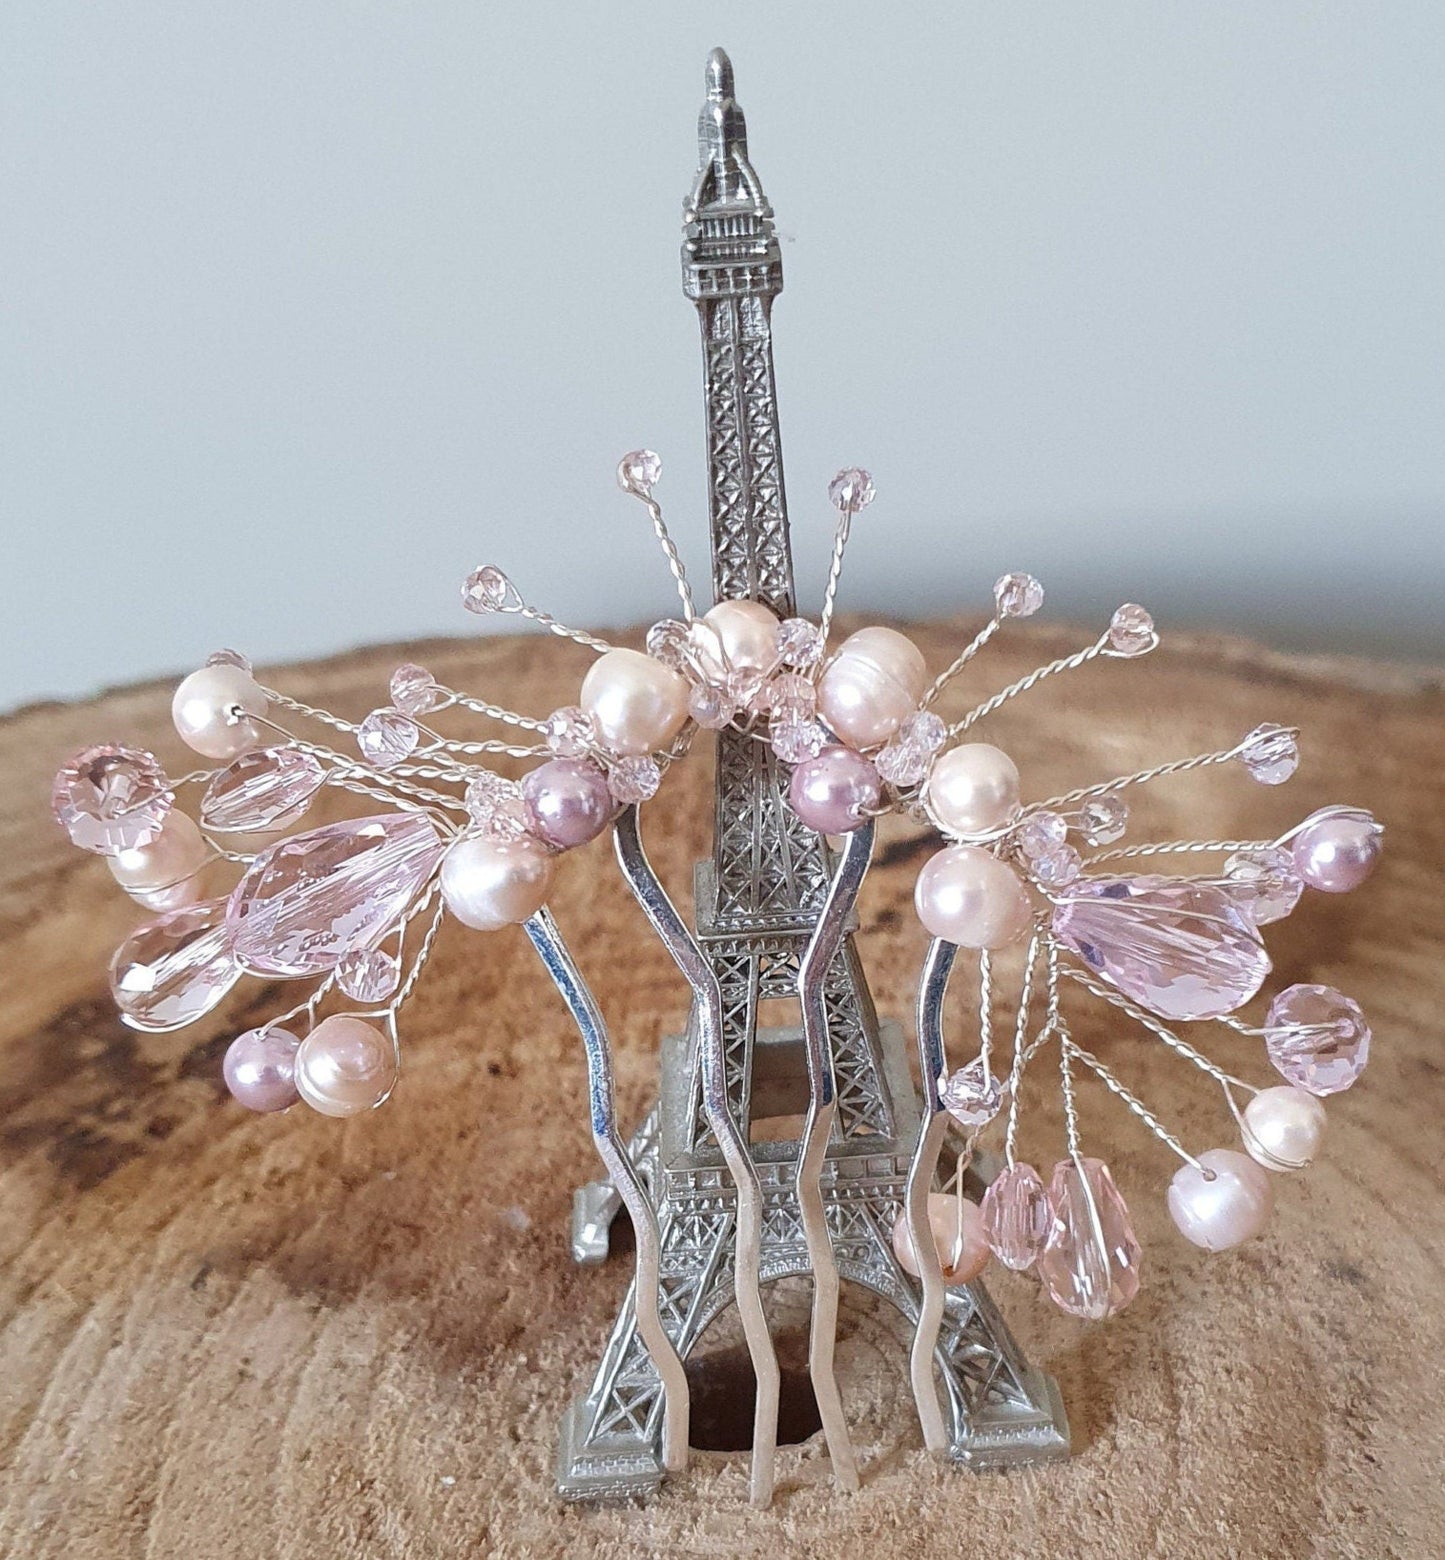 Peineta nupcial hecha a mano con perlas de agua dulce -Elegante accesorio para el cabello para bodas, peineta metálica fujiyuan, invitadas y fiestas